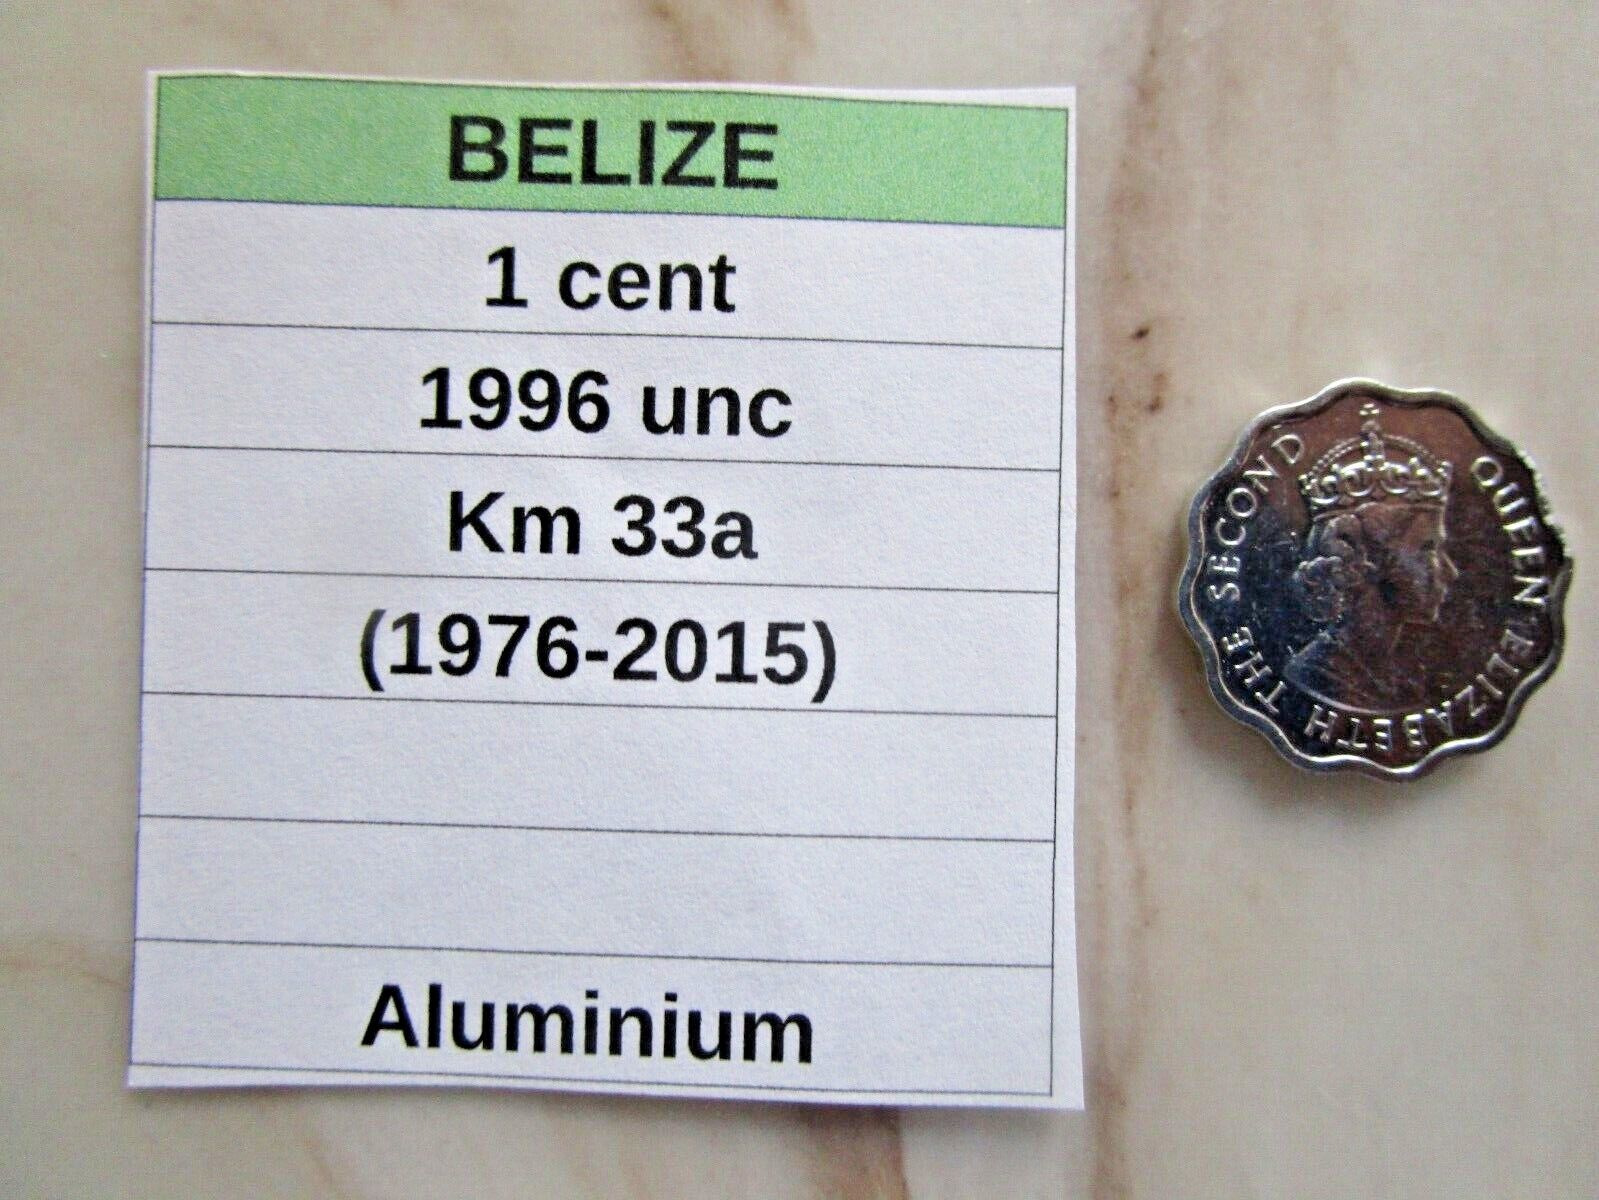 Belize,  1 Cent, 1996 Unc, Km 33a (1976-2015), Scalloped Edge, Aluminum